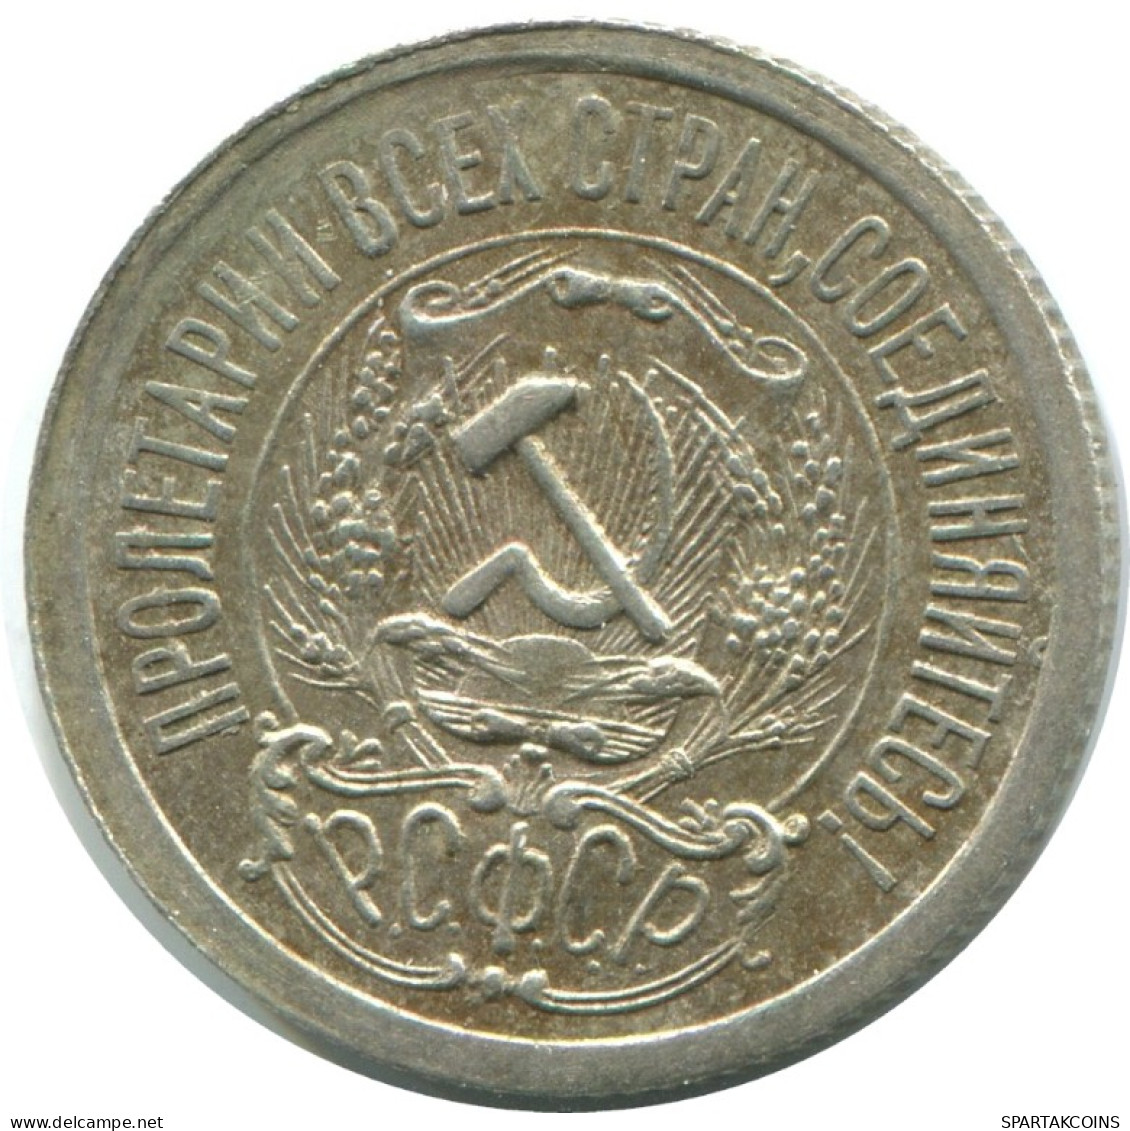 15 KOPEKS 1923 RUSSLAND RUSSIA RSFSR SILBER Münze HIGH GRADE #AF171.4.D.A - Russia